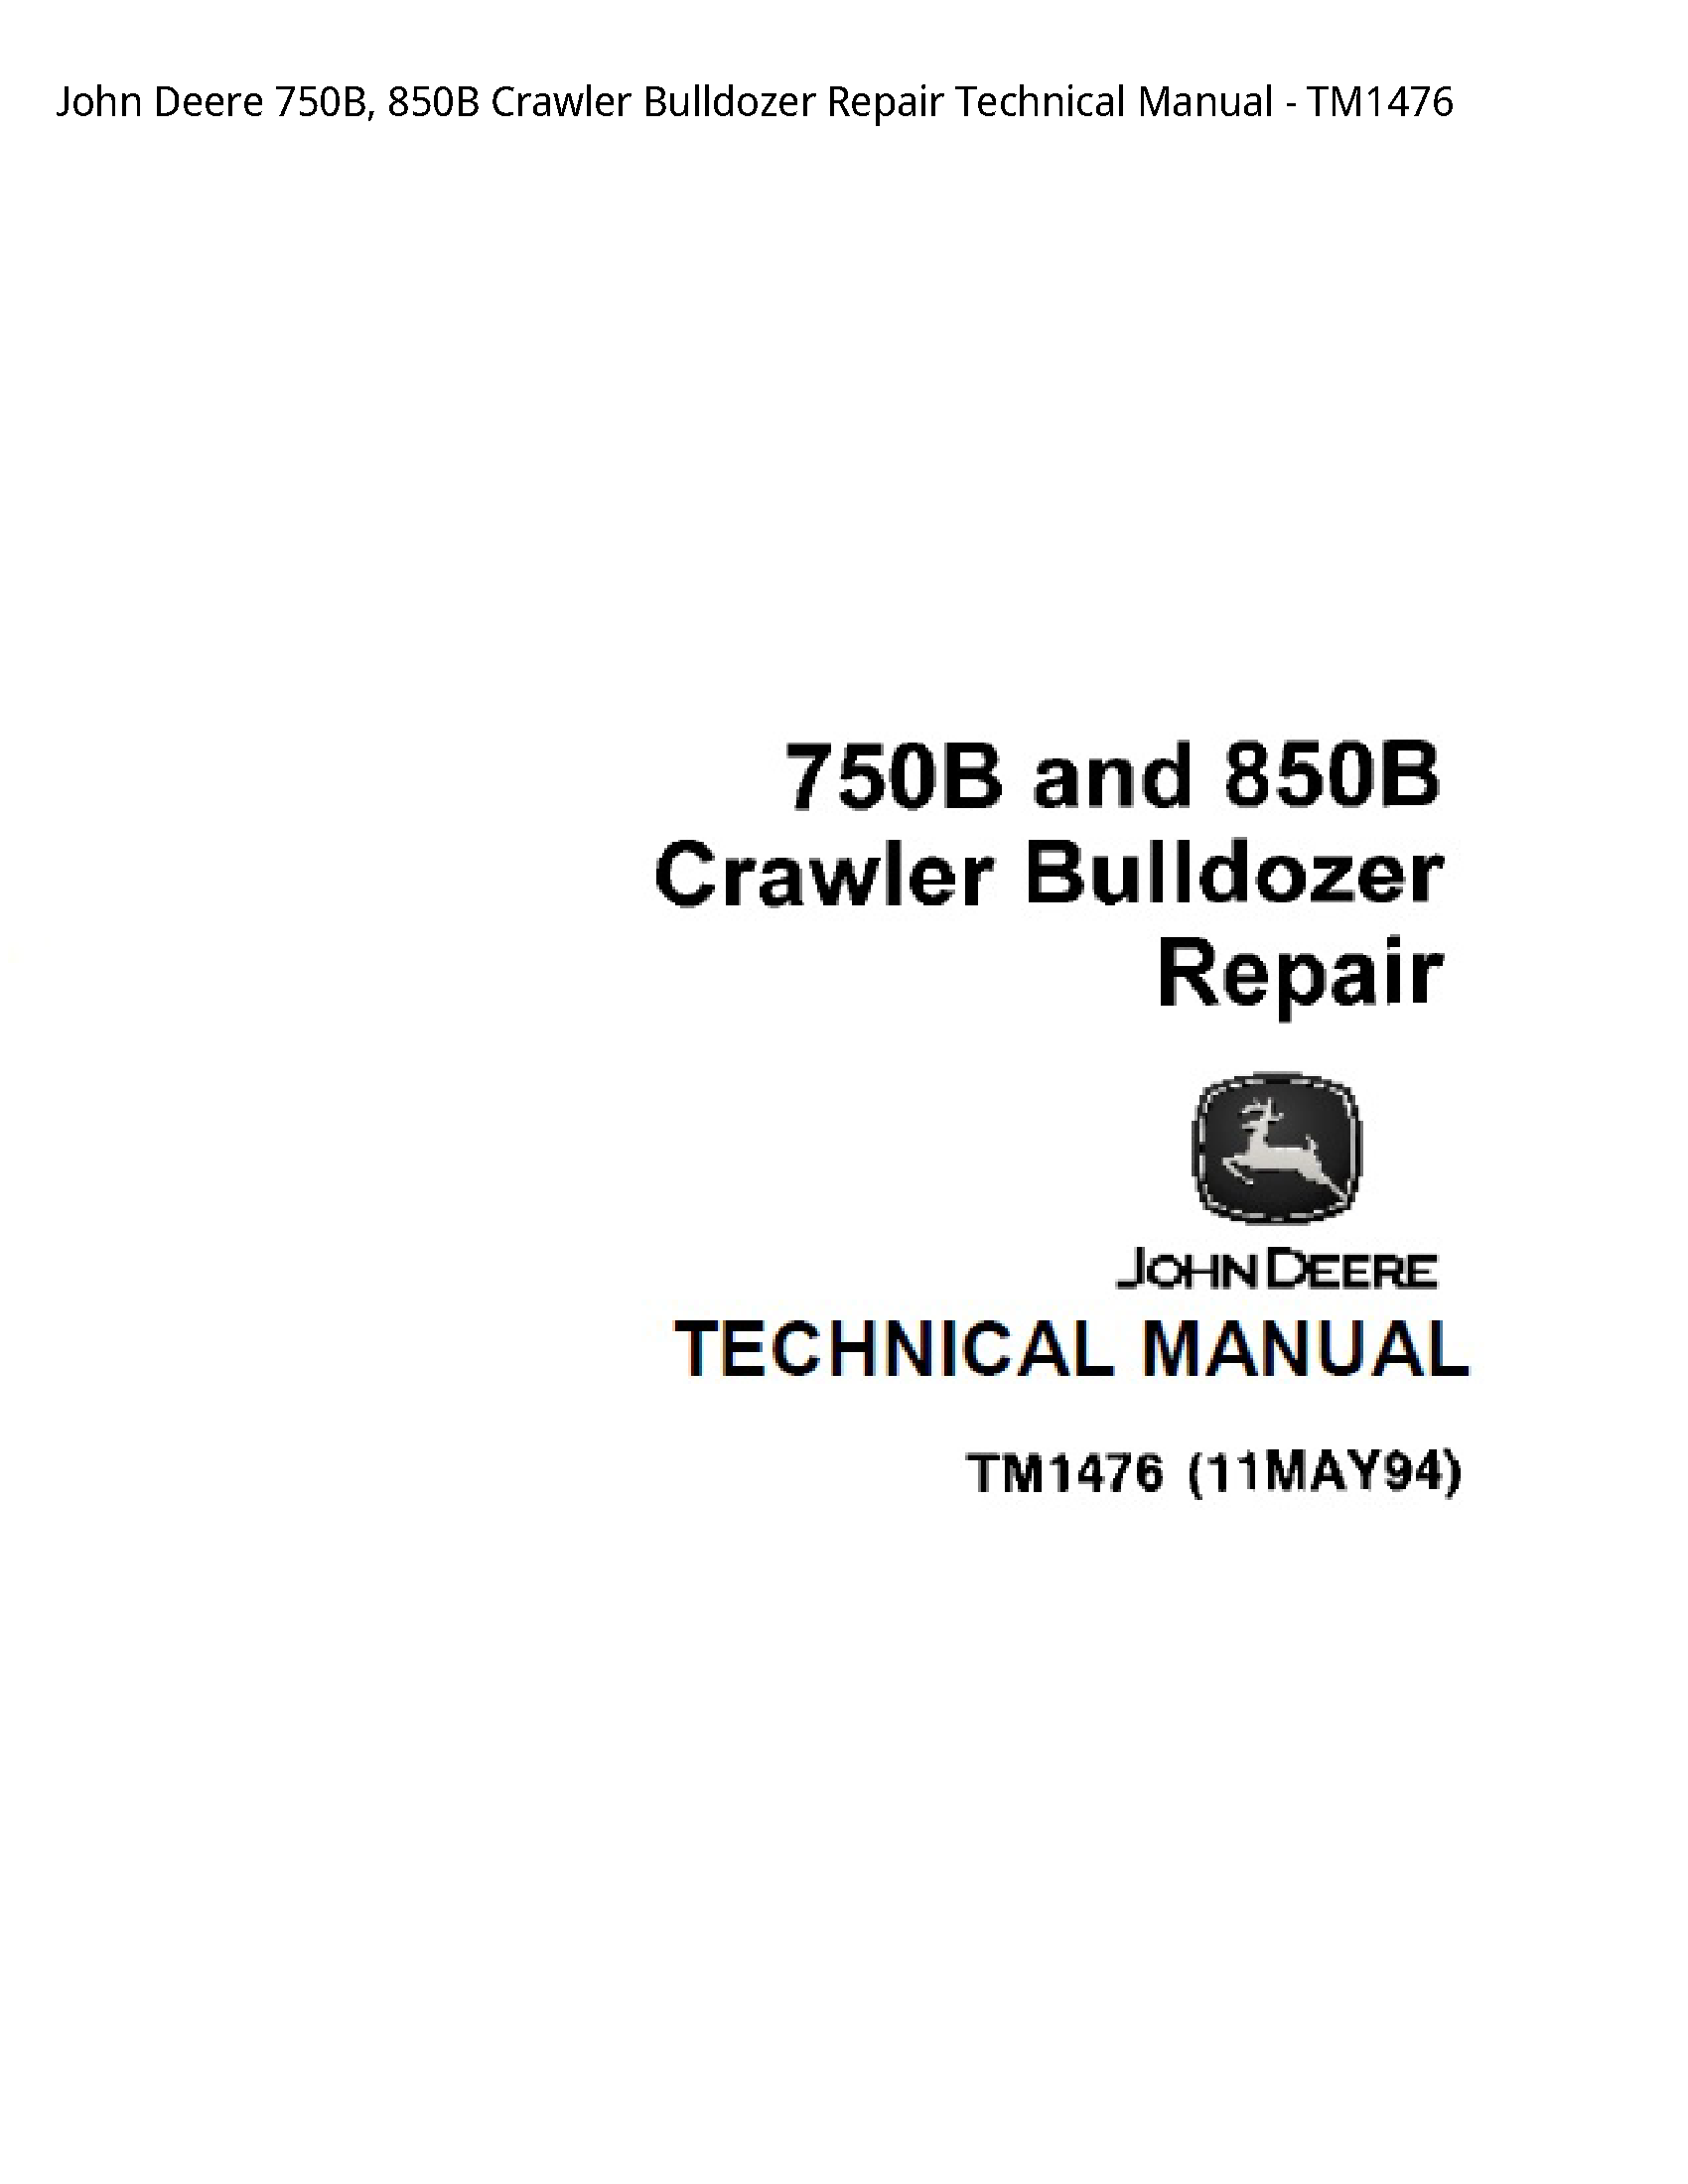 John Deere 750B Crawler Bulldozer Repair Technical manual